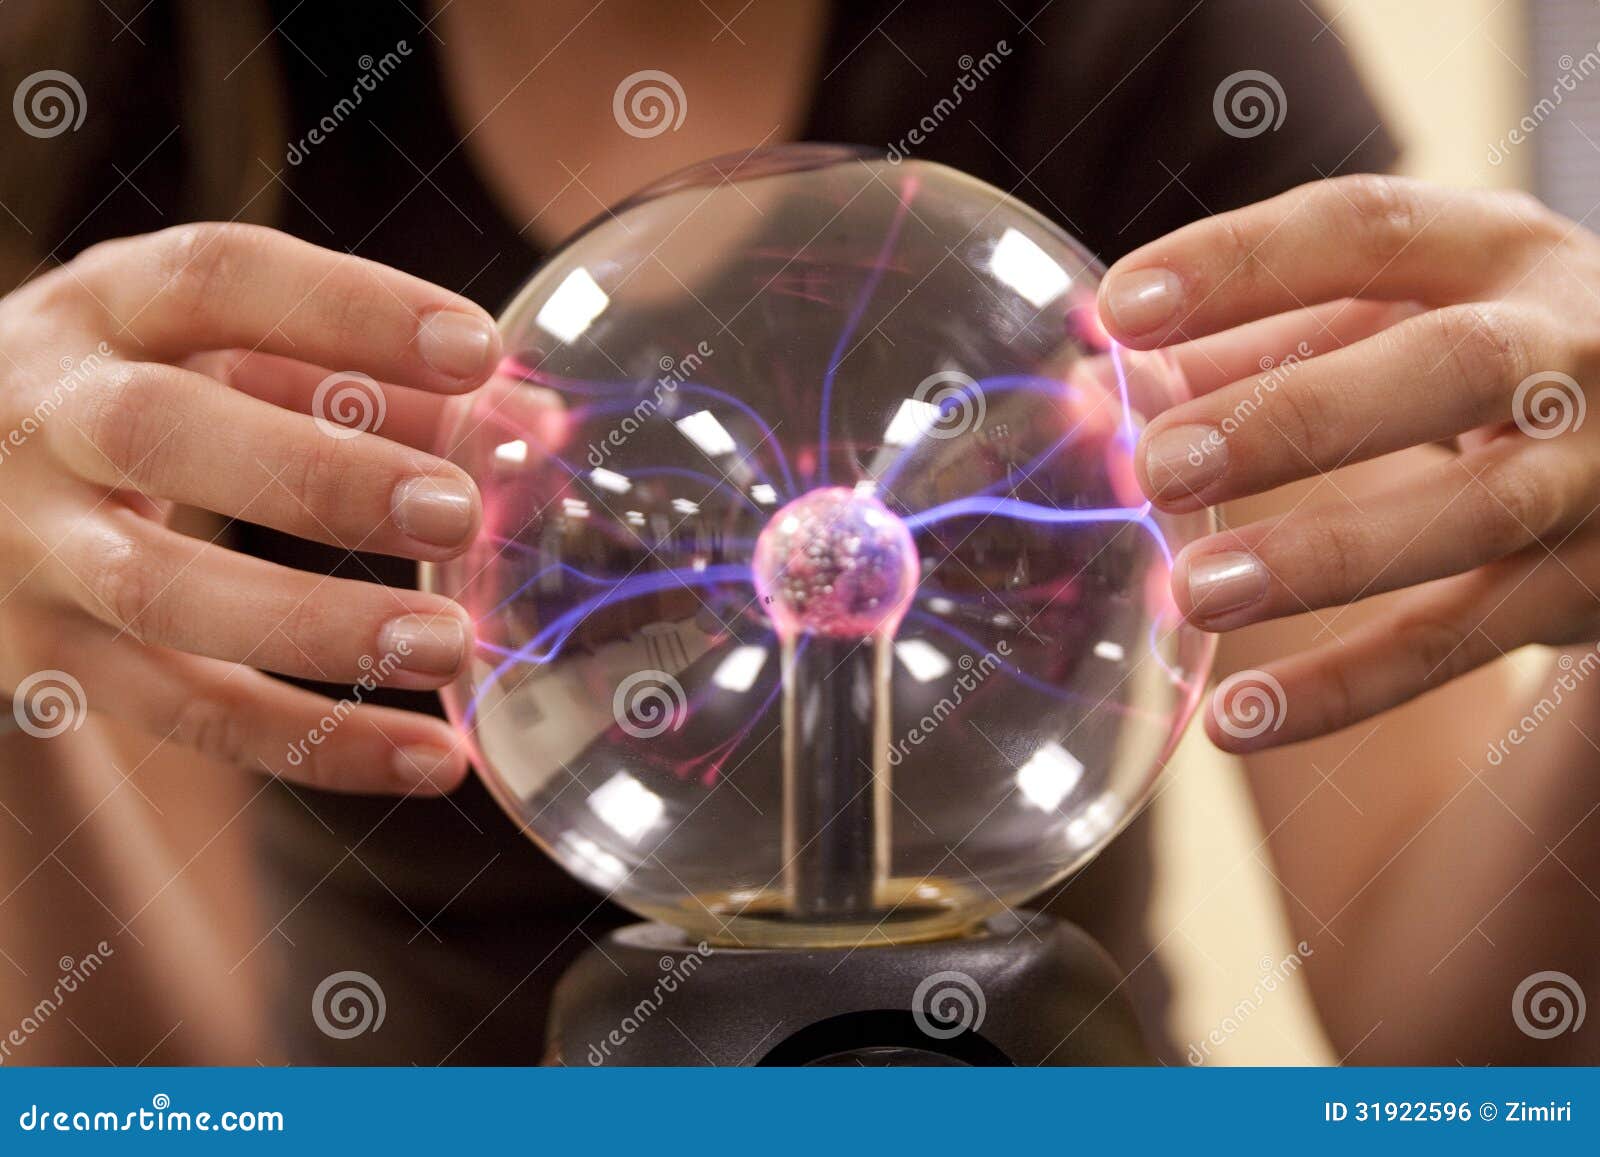 female student touching a plasma ball.